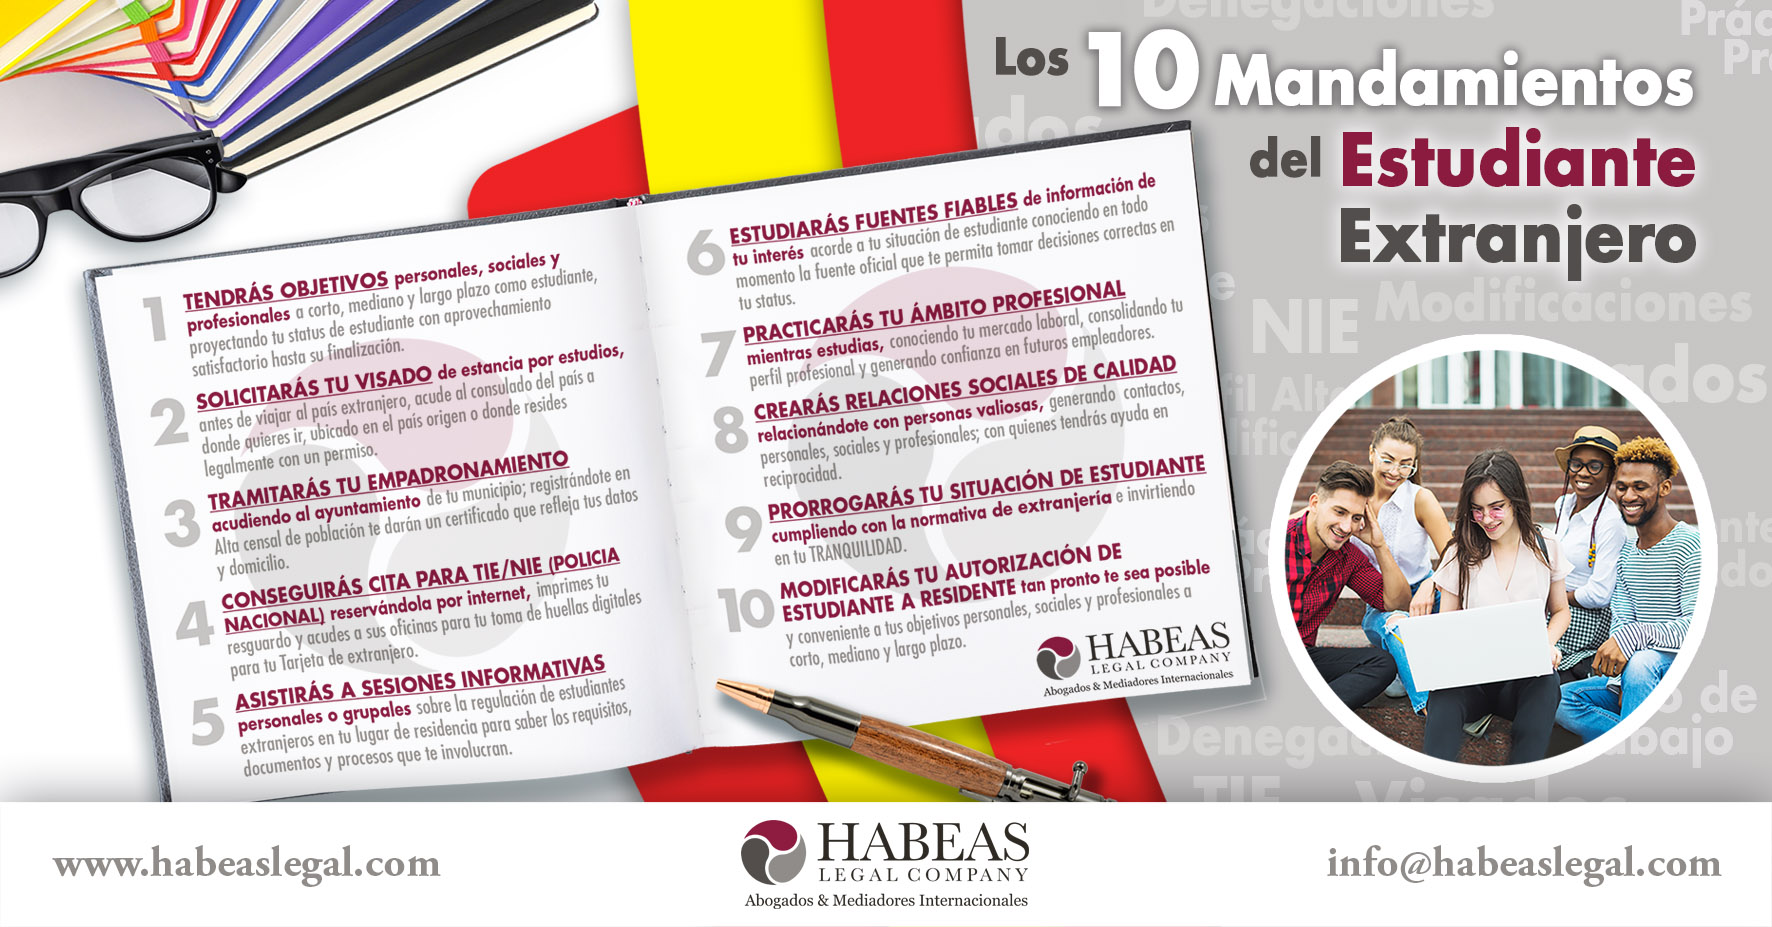 10 Mandamientos Estudiante blog Habeas - Los 10 Mandamientos del Estudiante Extranjero